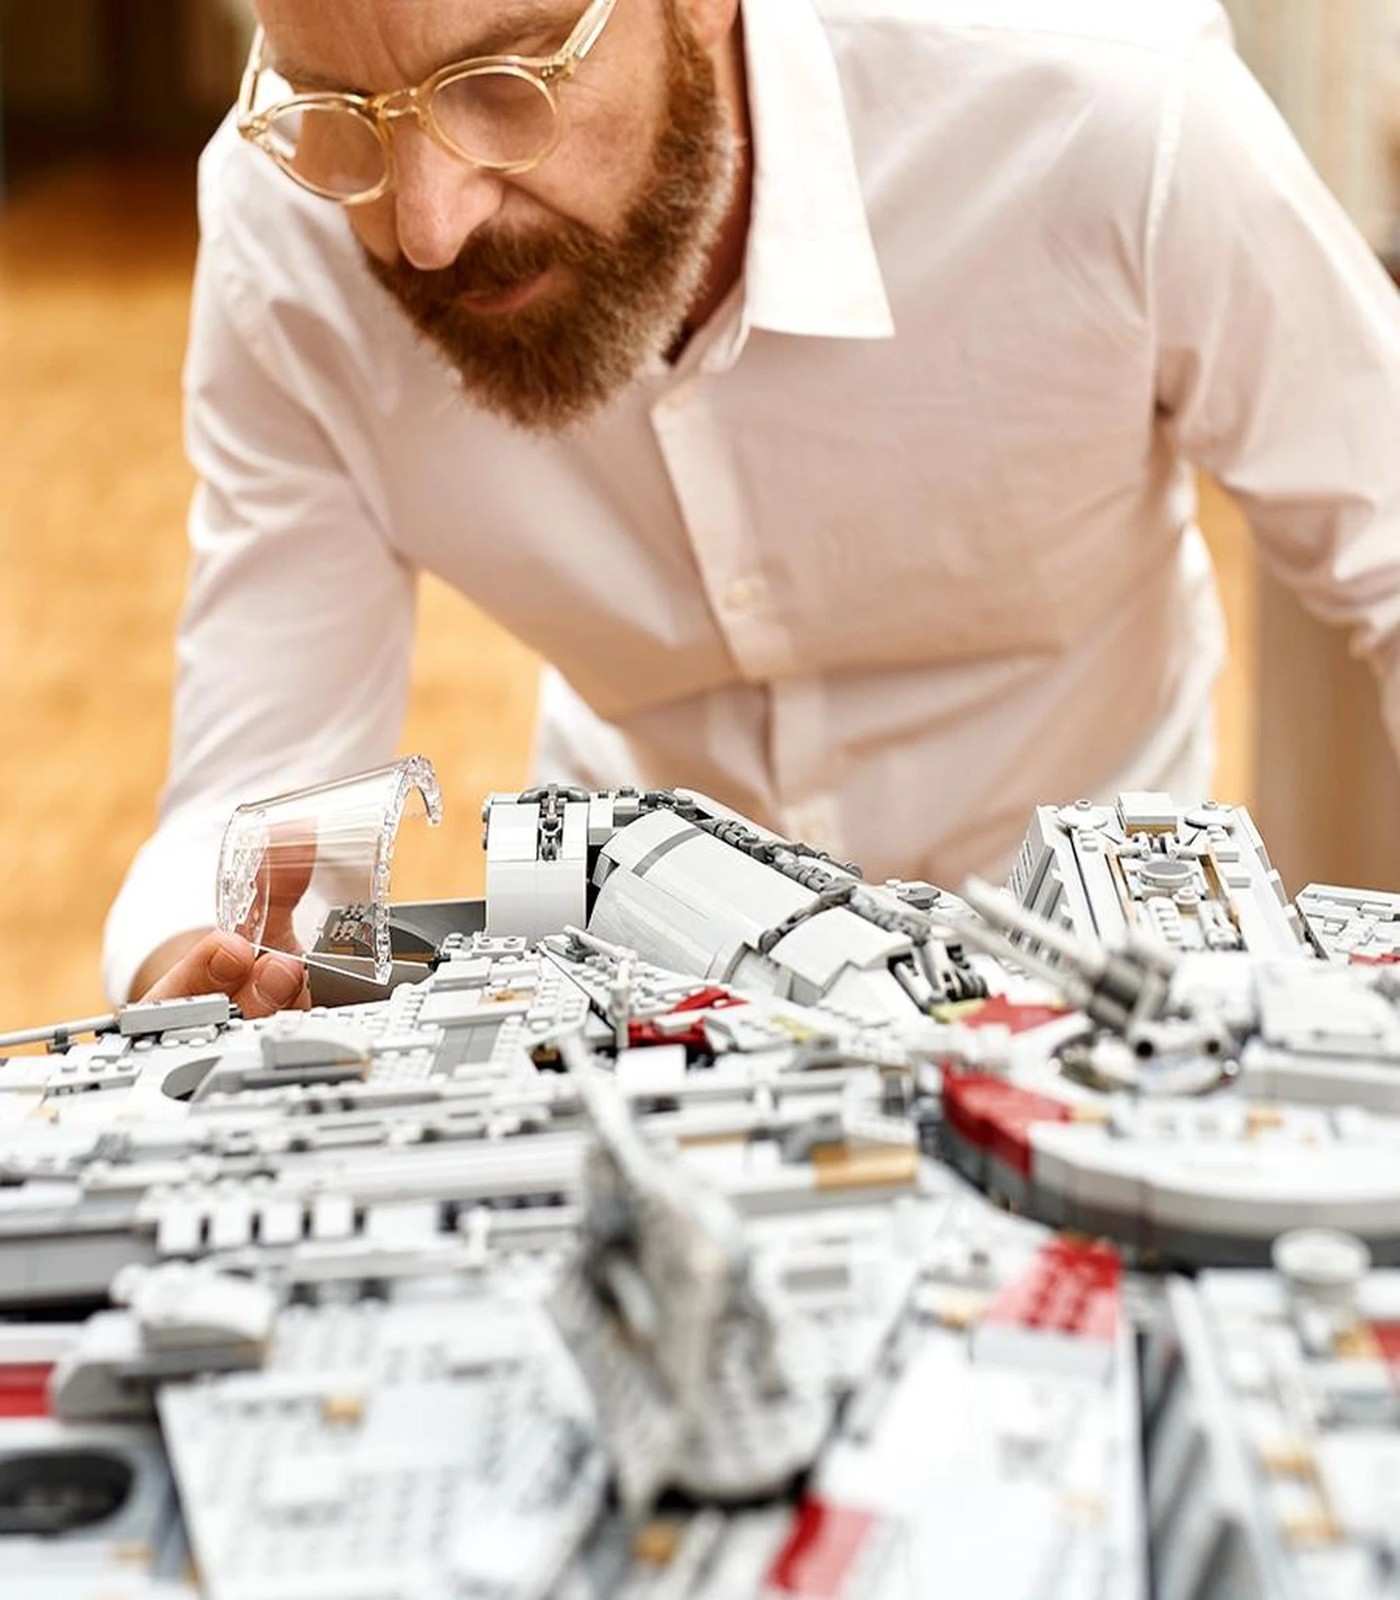 Lego Star Wars 75192 : Millennium Falcon UCS (partie 1) - Lego(R